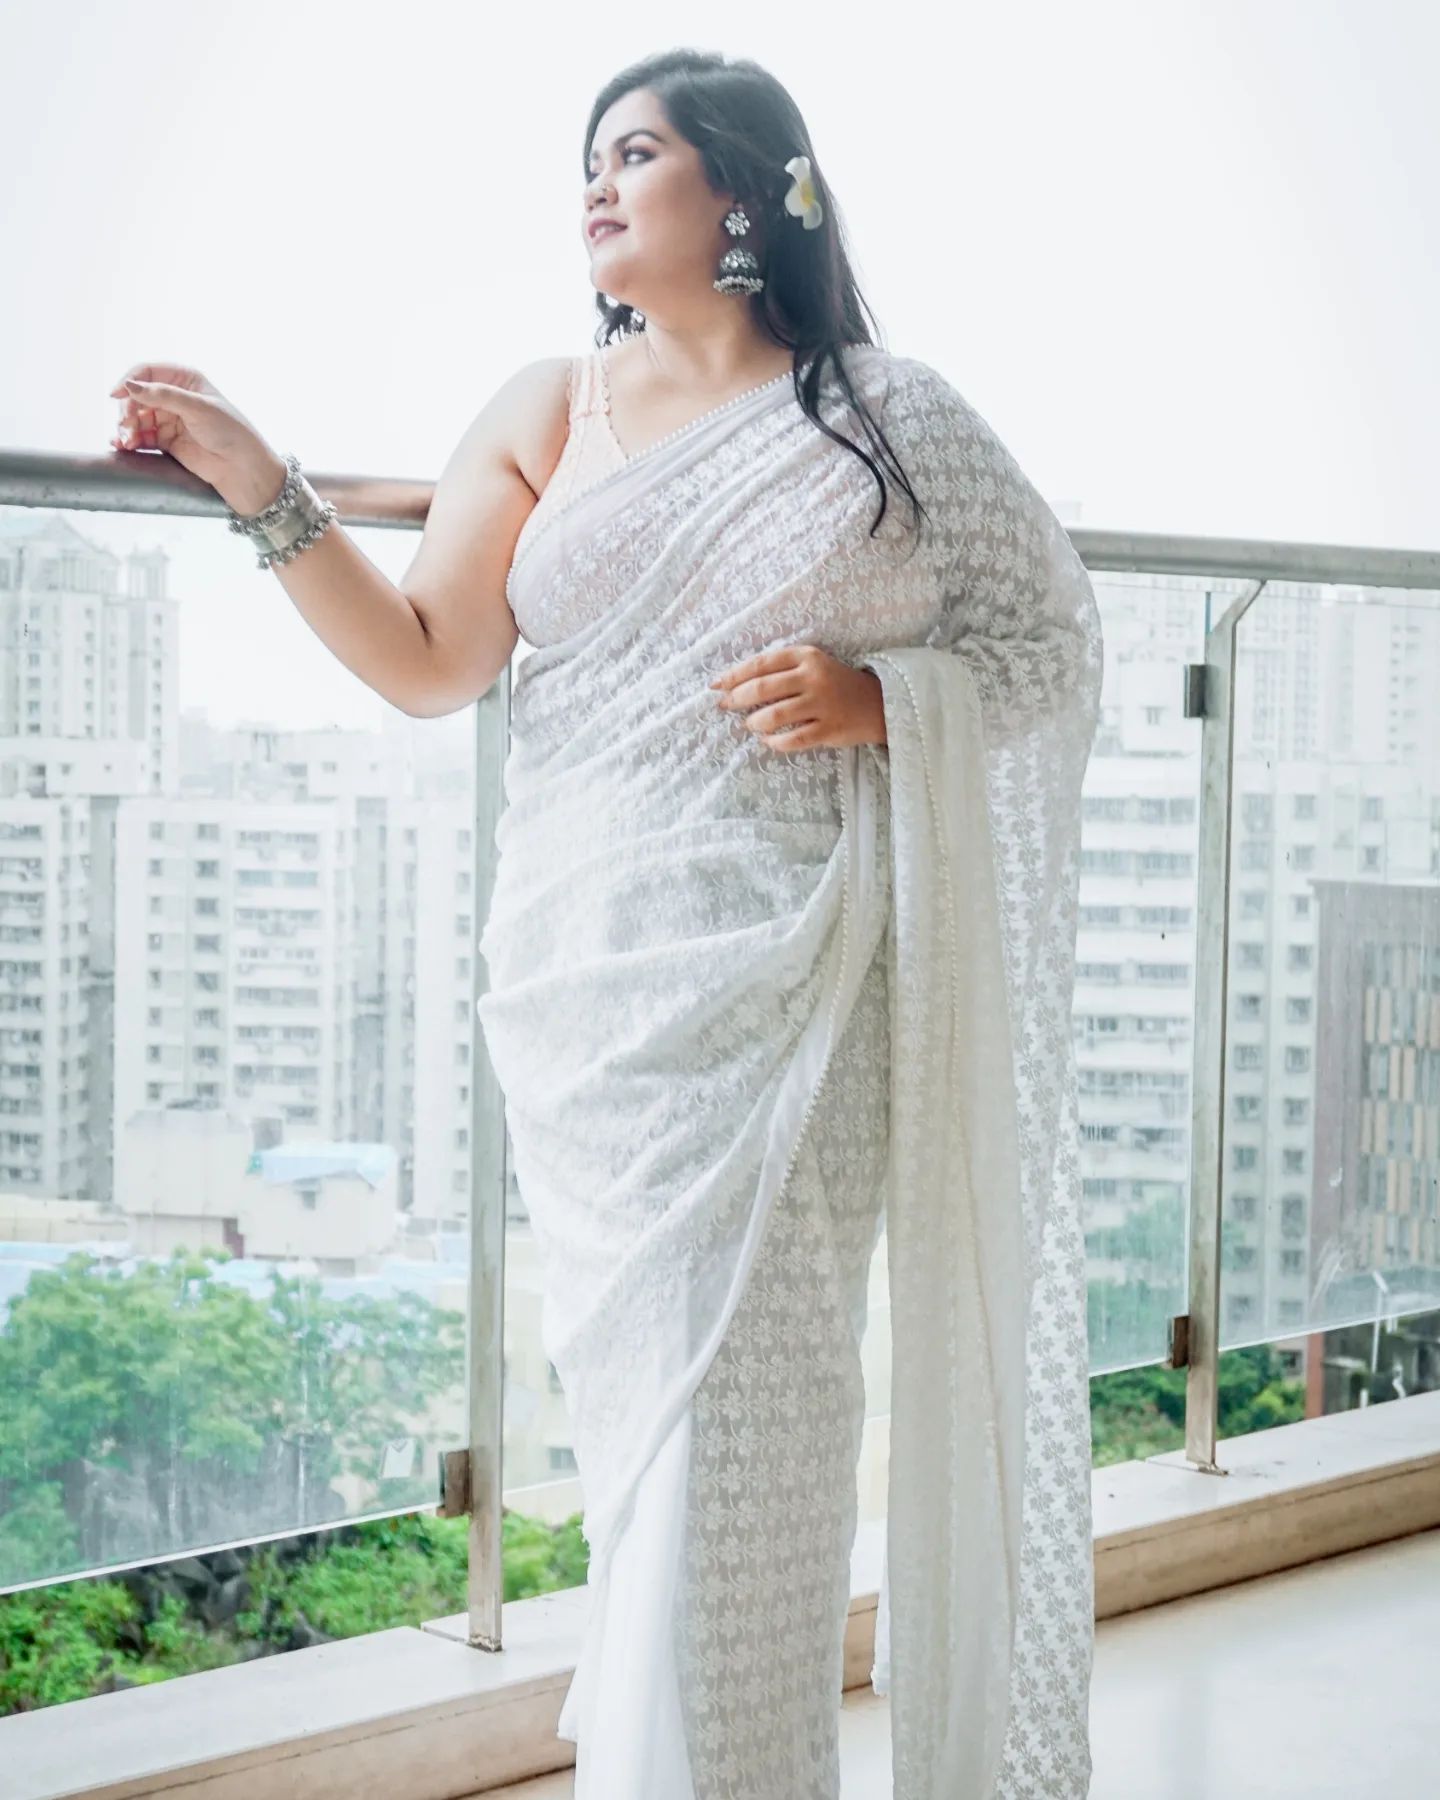 sundara manamadhye bharali fame actress akshaya naik photoshoot